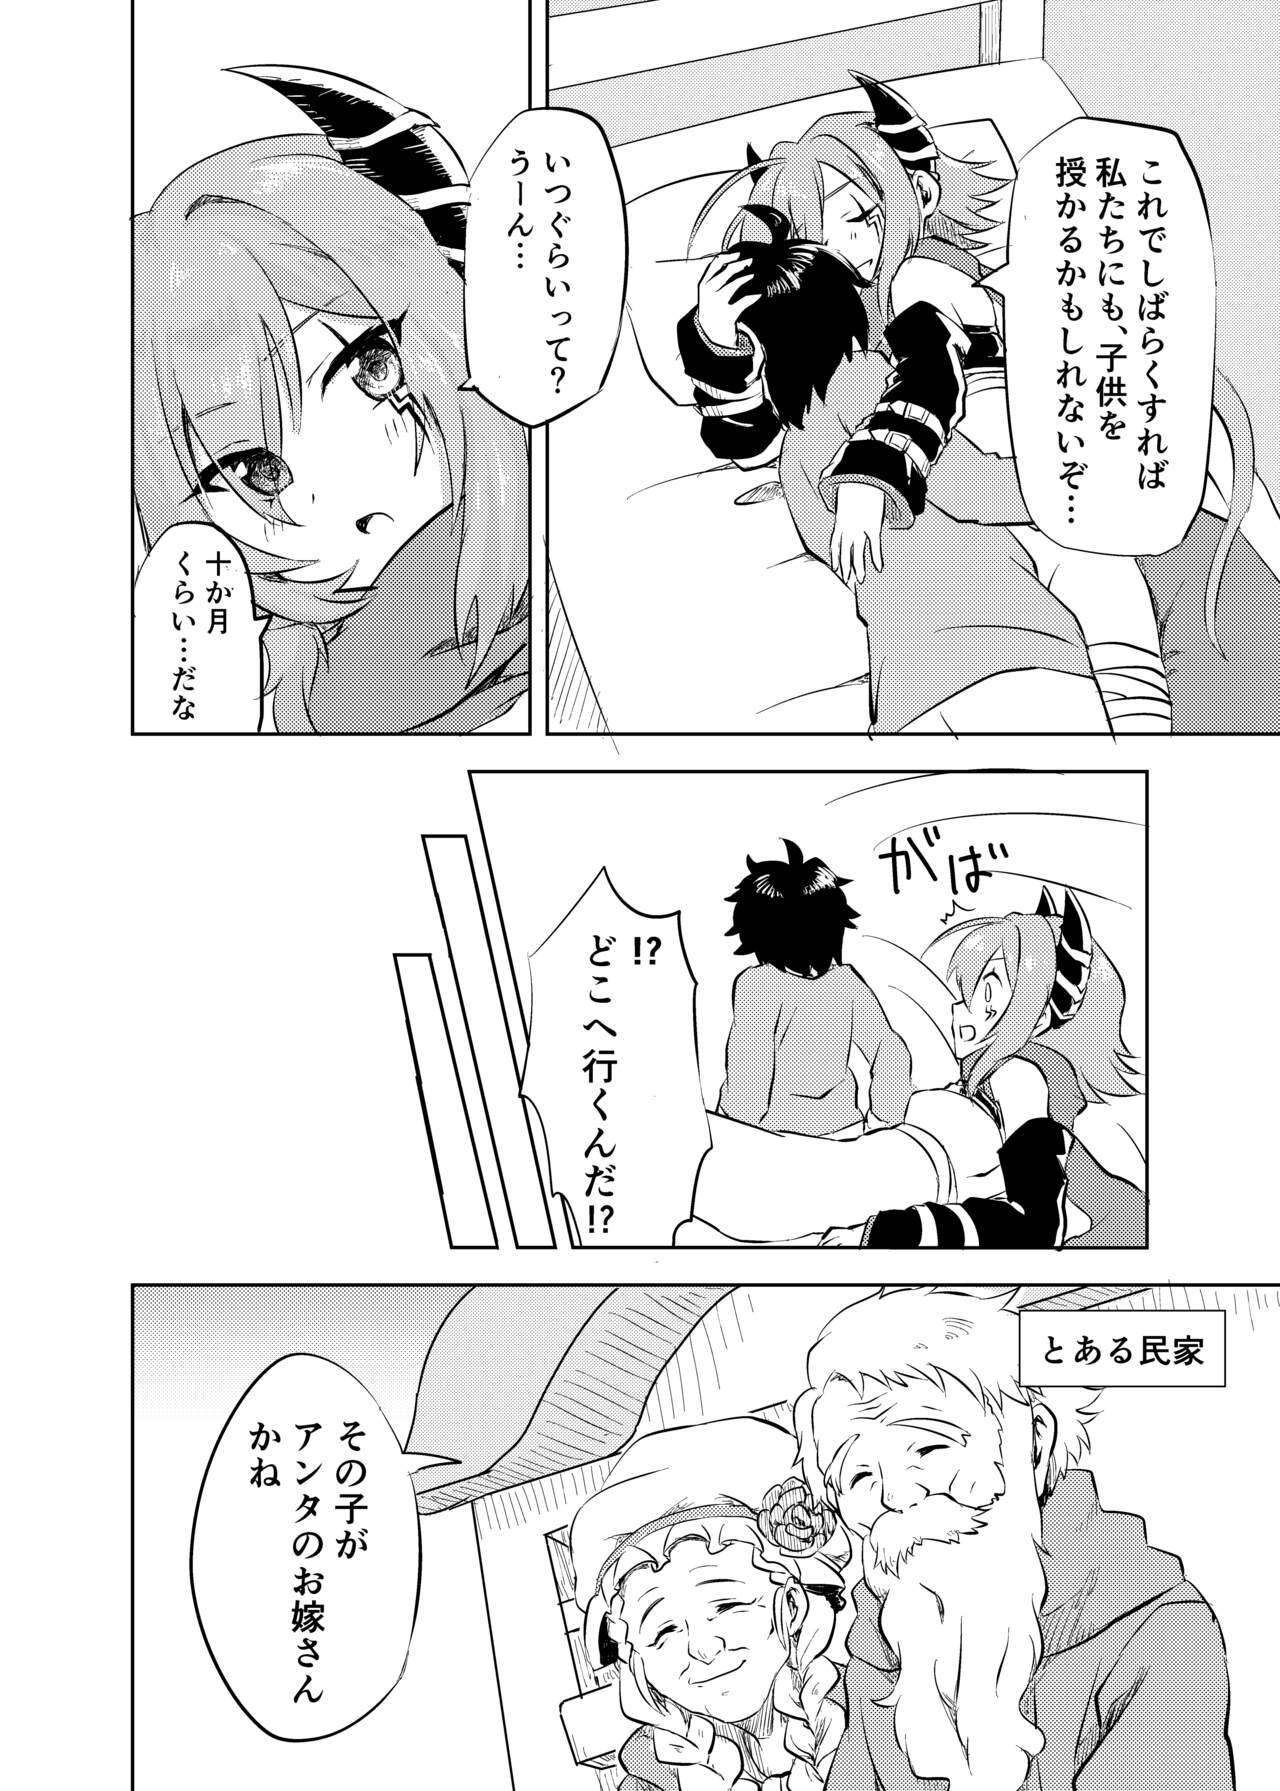 Dyke Anna-chan to no Kodomo ga Hoshii! - Princess connect Inked - Page 12